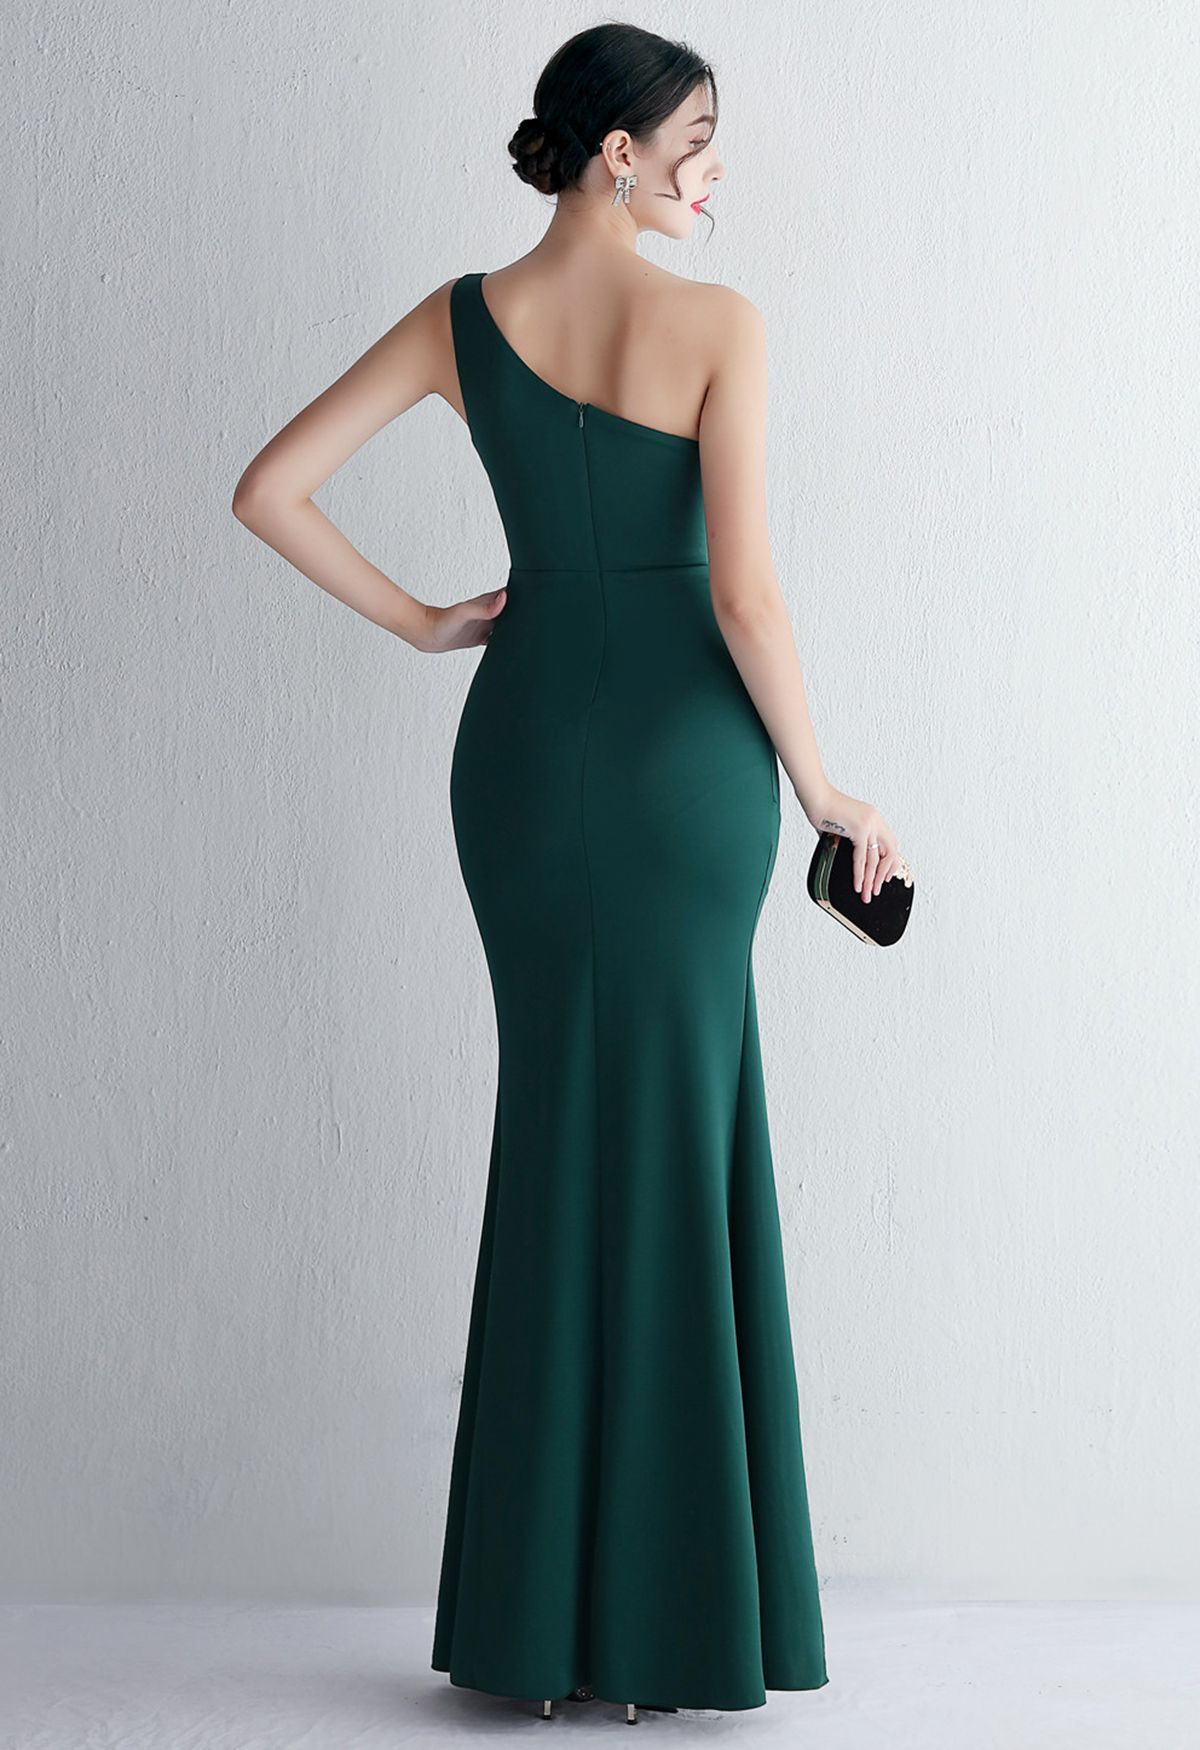 فستان مفتوح بكتف واحد باللون الأخضر الداكن